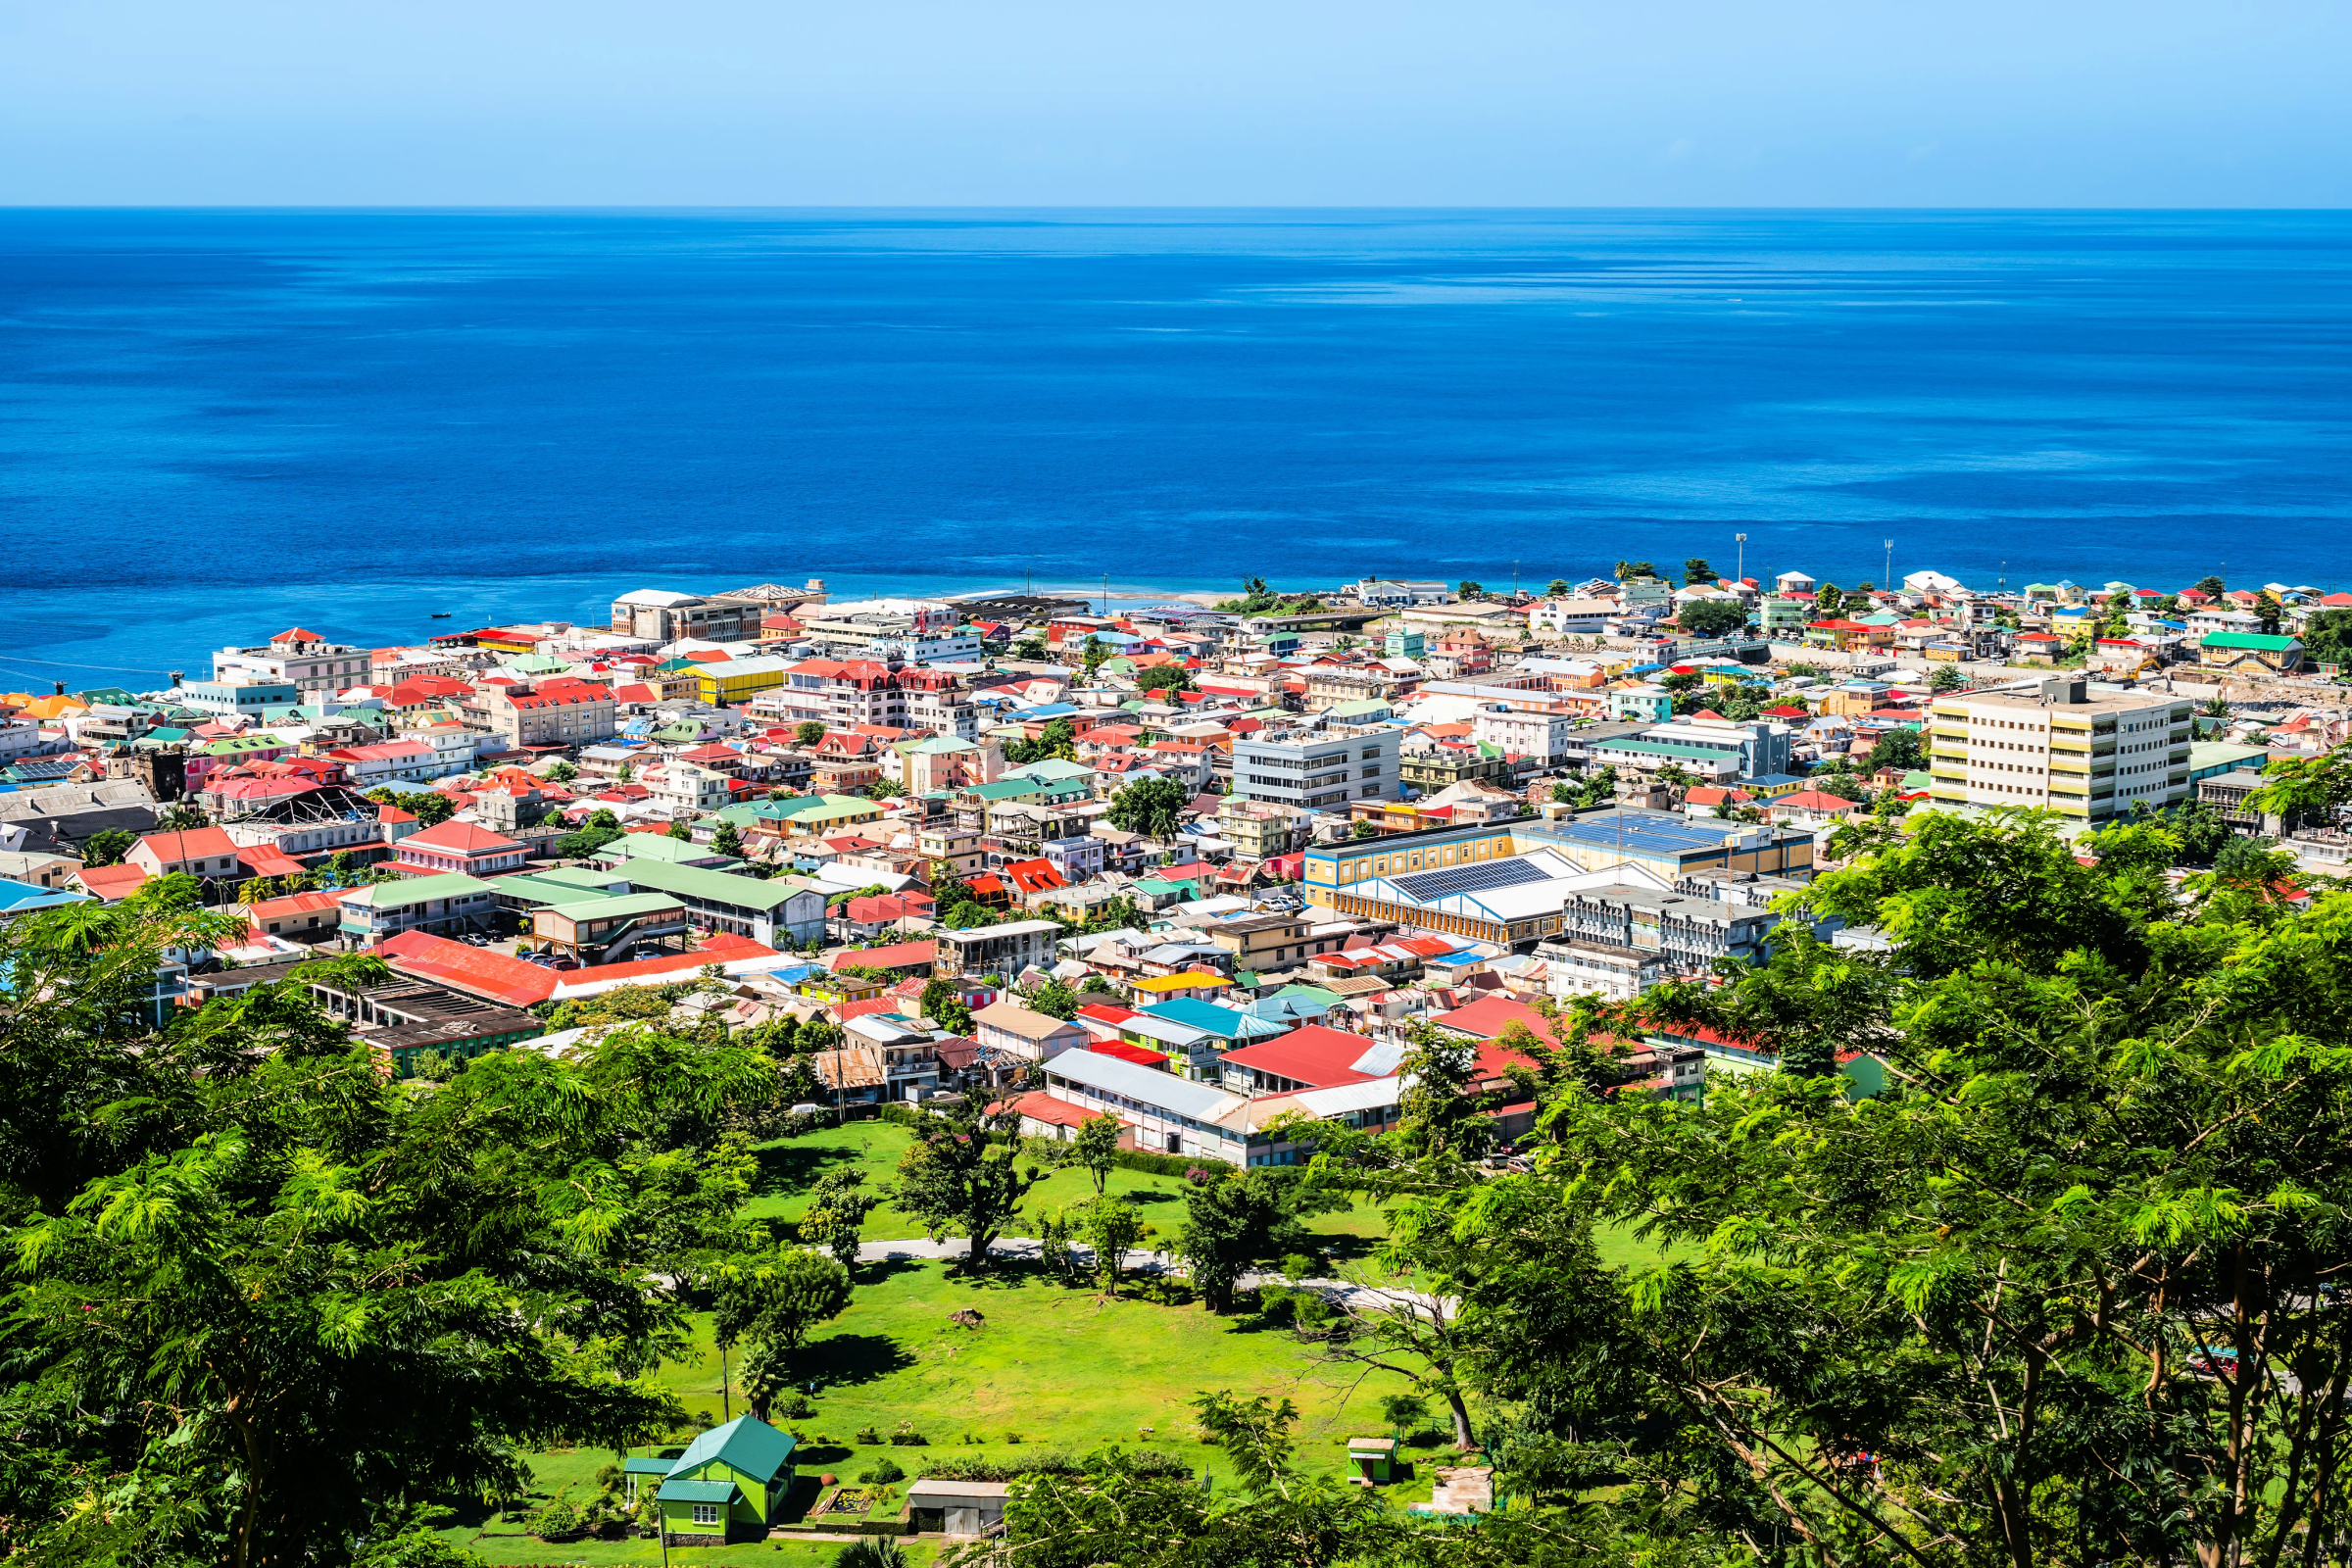 Roseau – Dominica